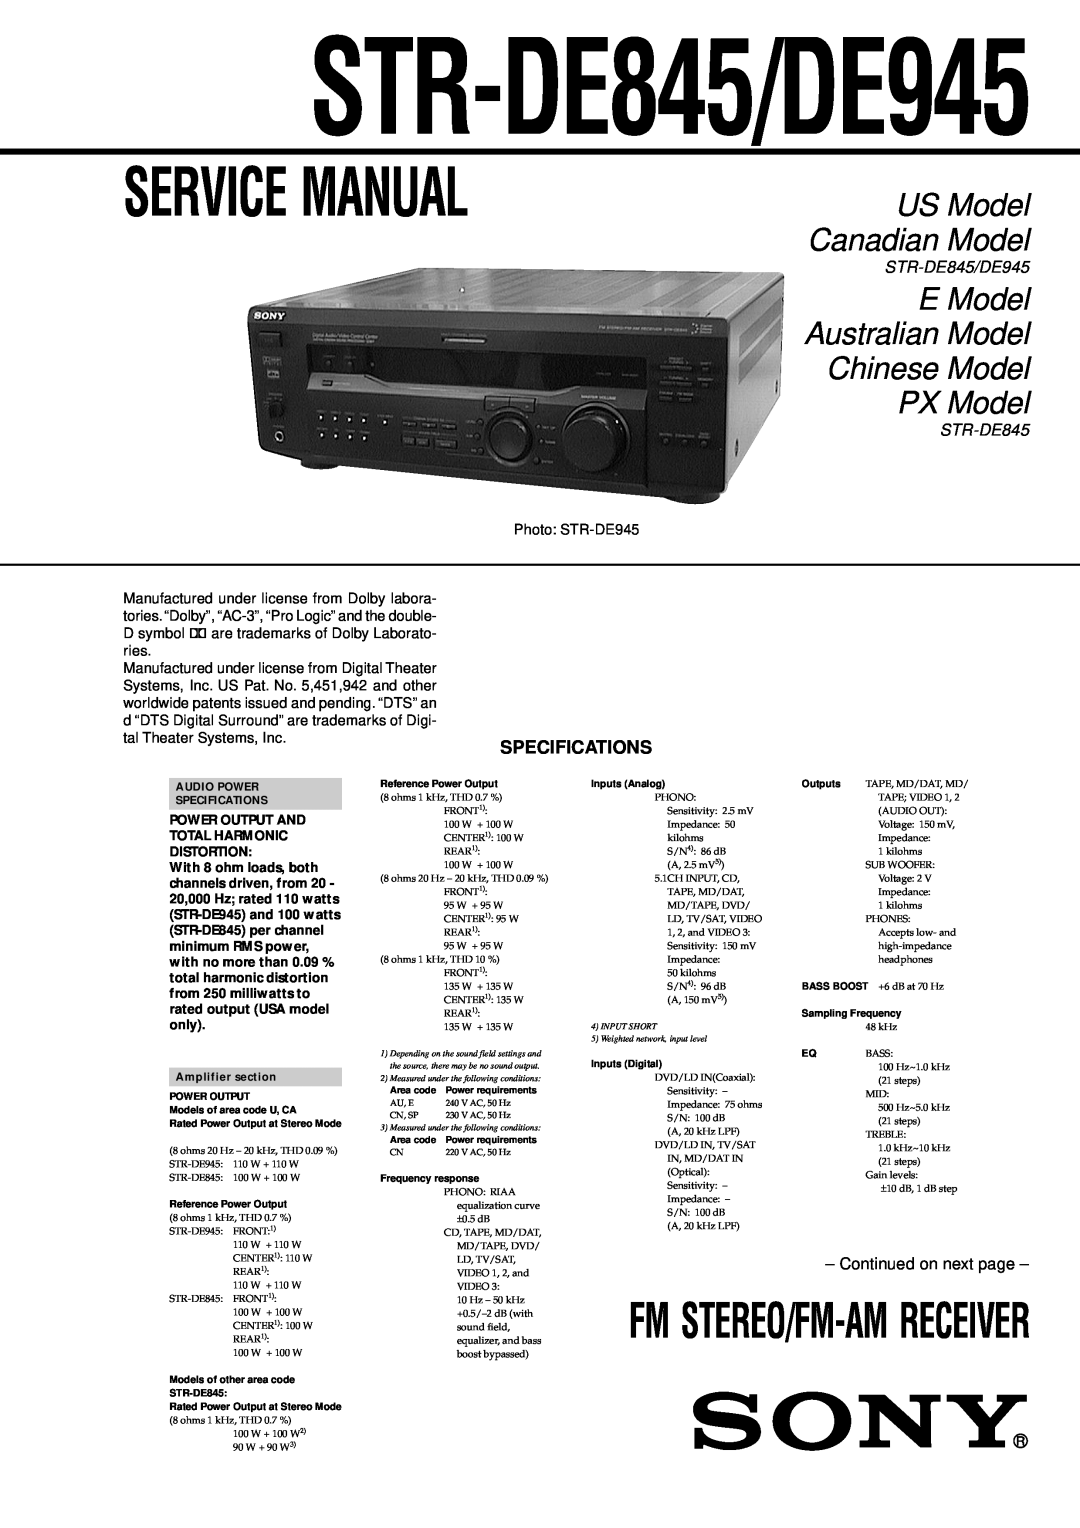 Sony service manual Specifications, STR-DE845/DE945, Service Manual, E Model Australian Model Chinese Model PX Model 